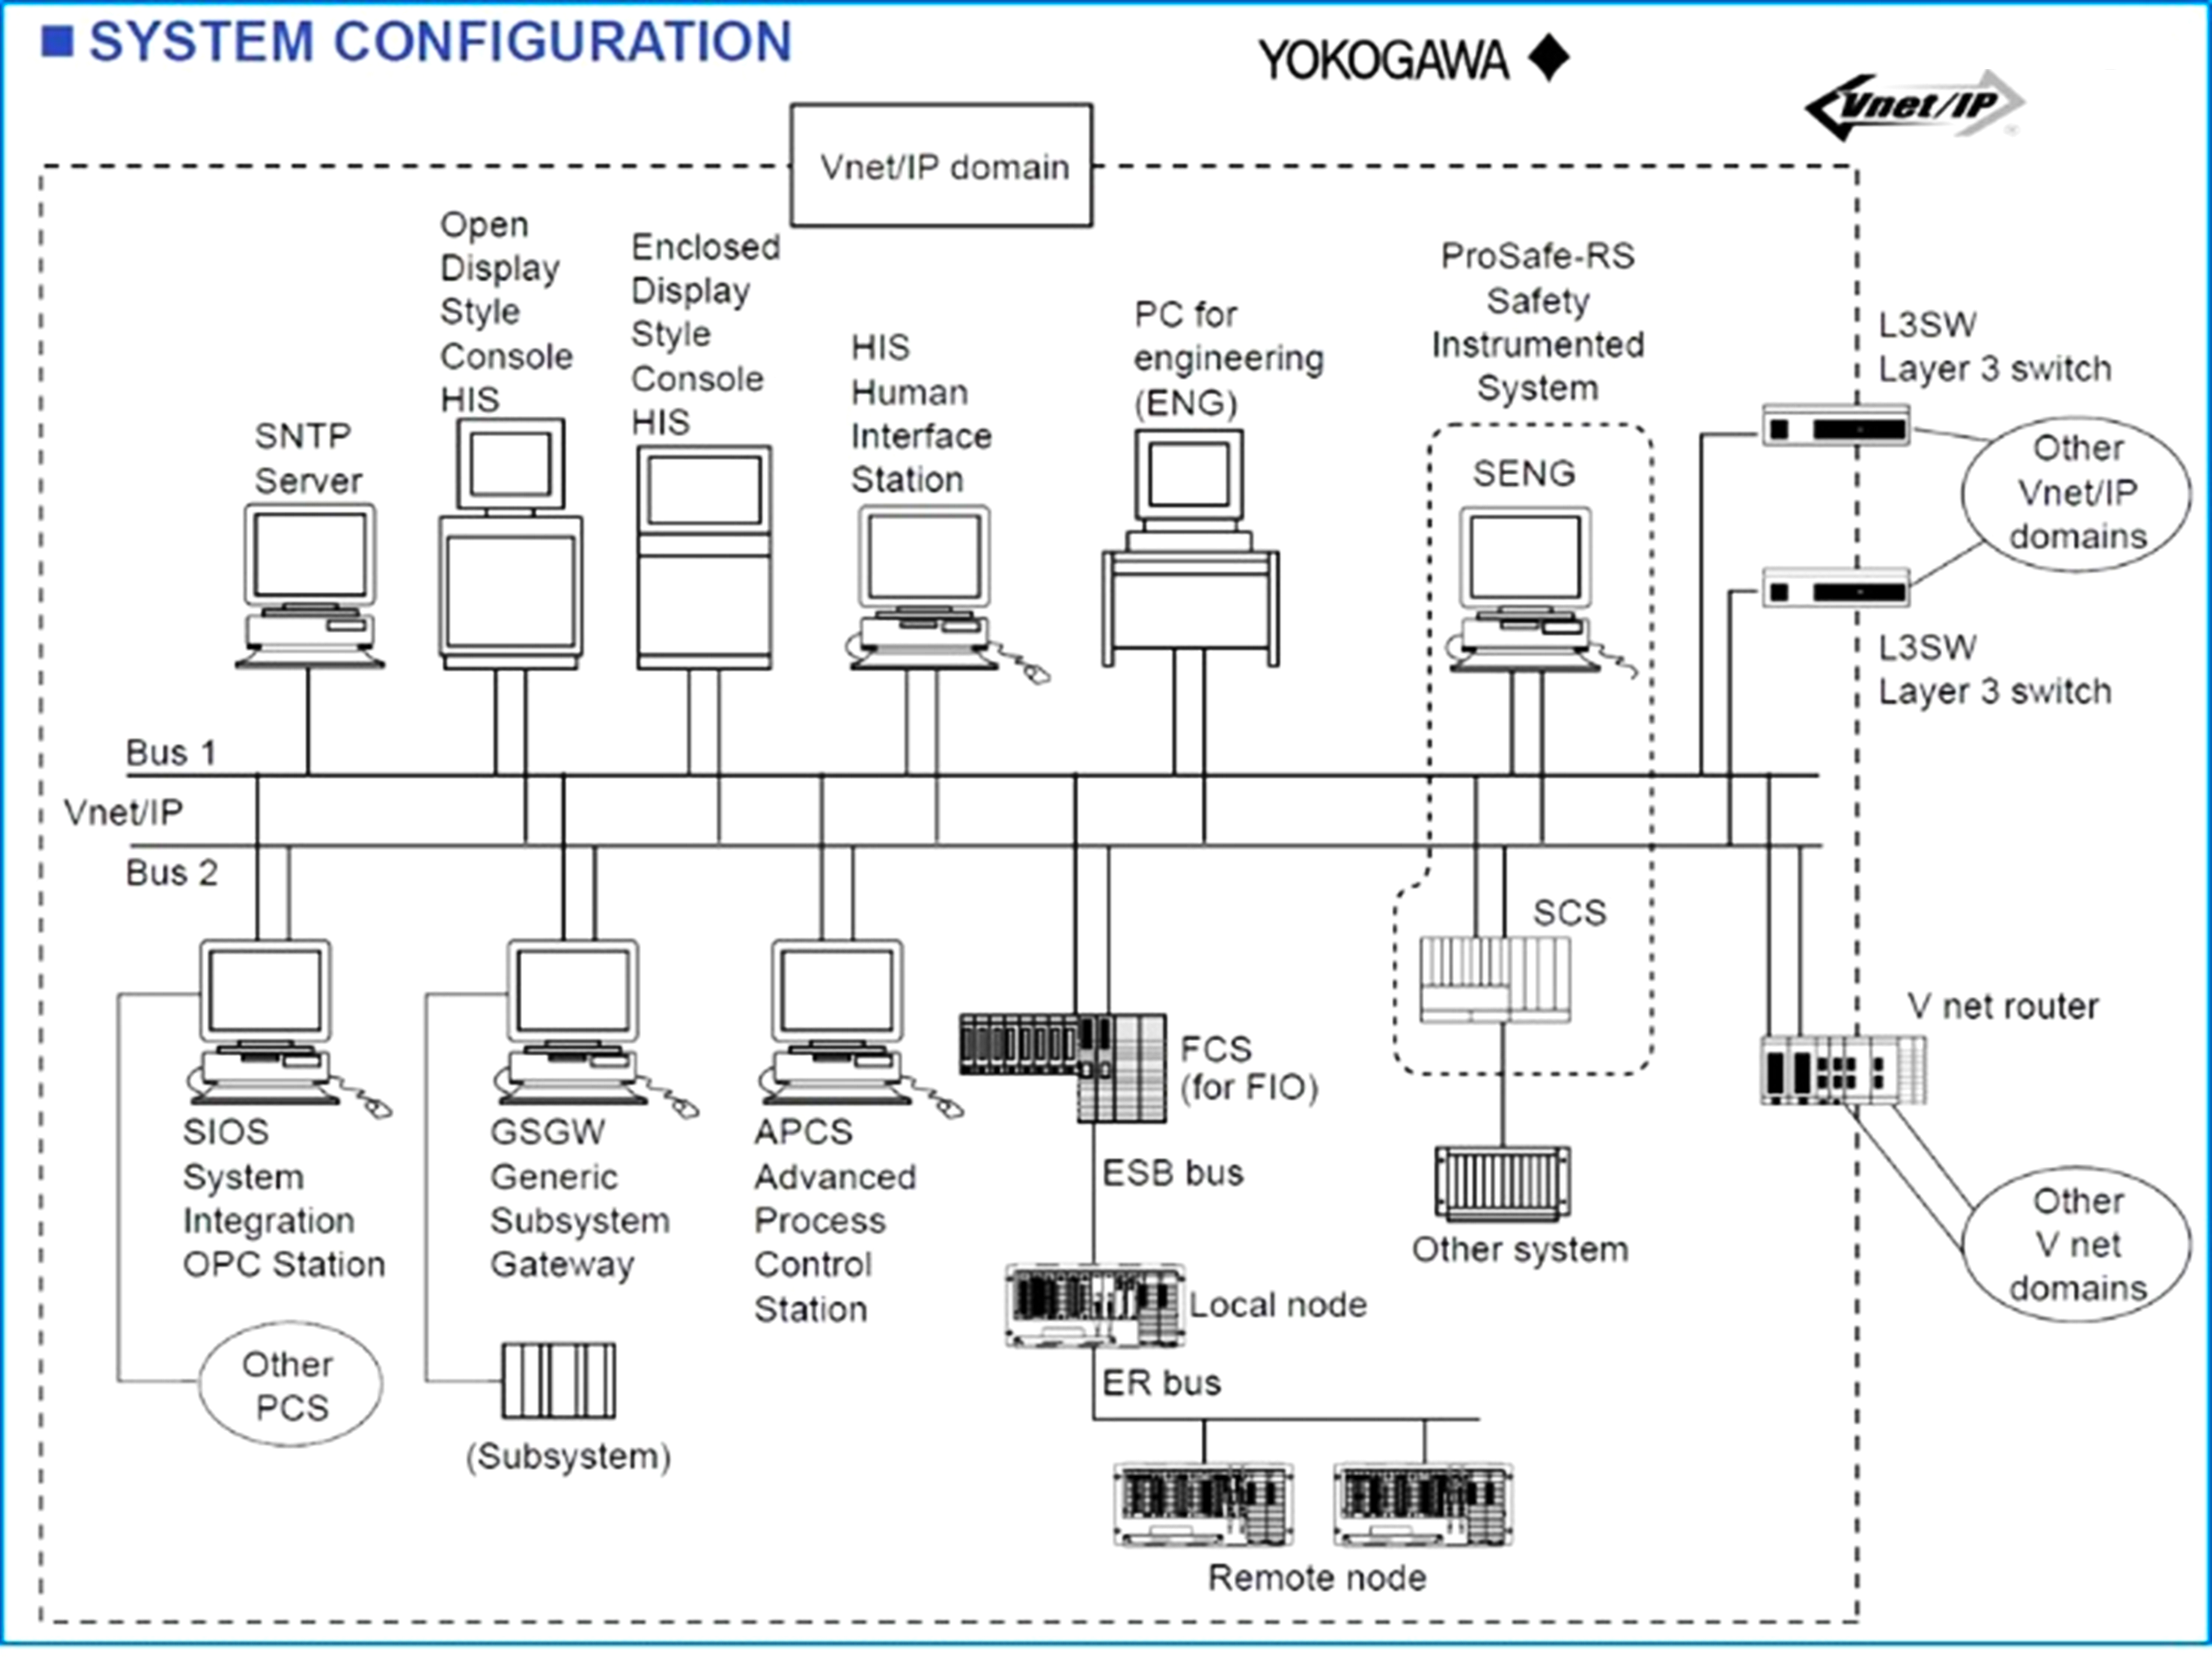 Yokogawa System Configuration